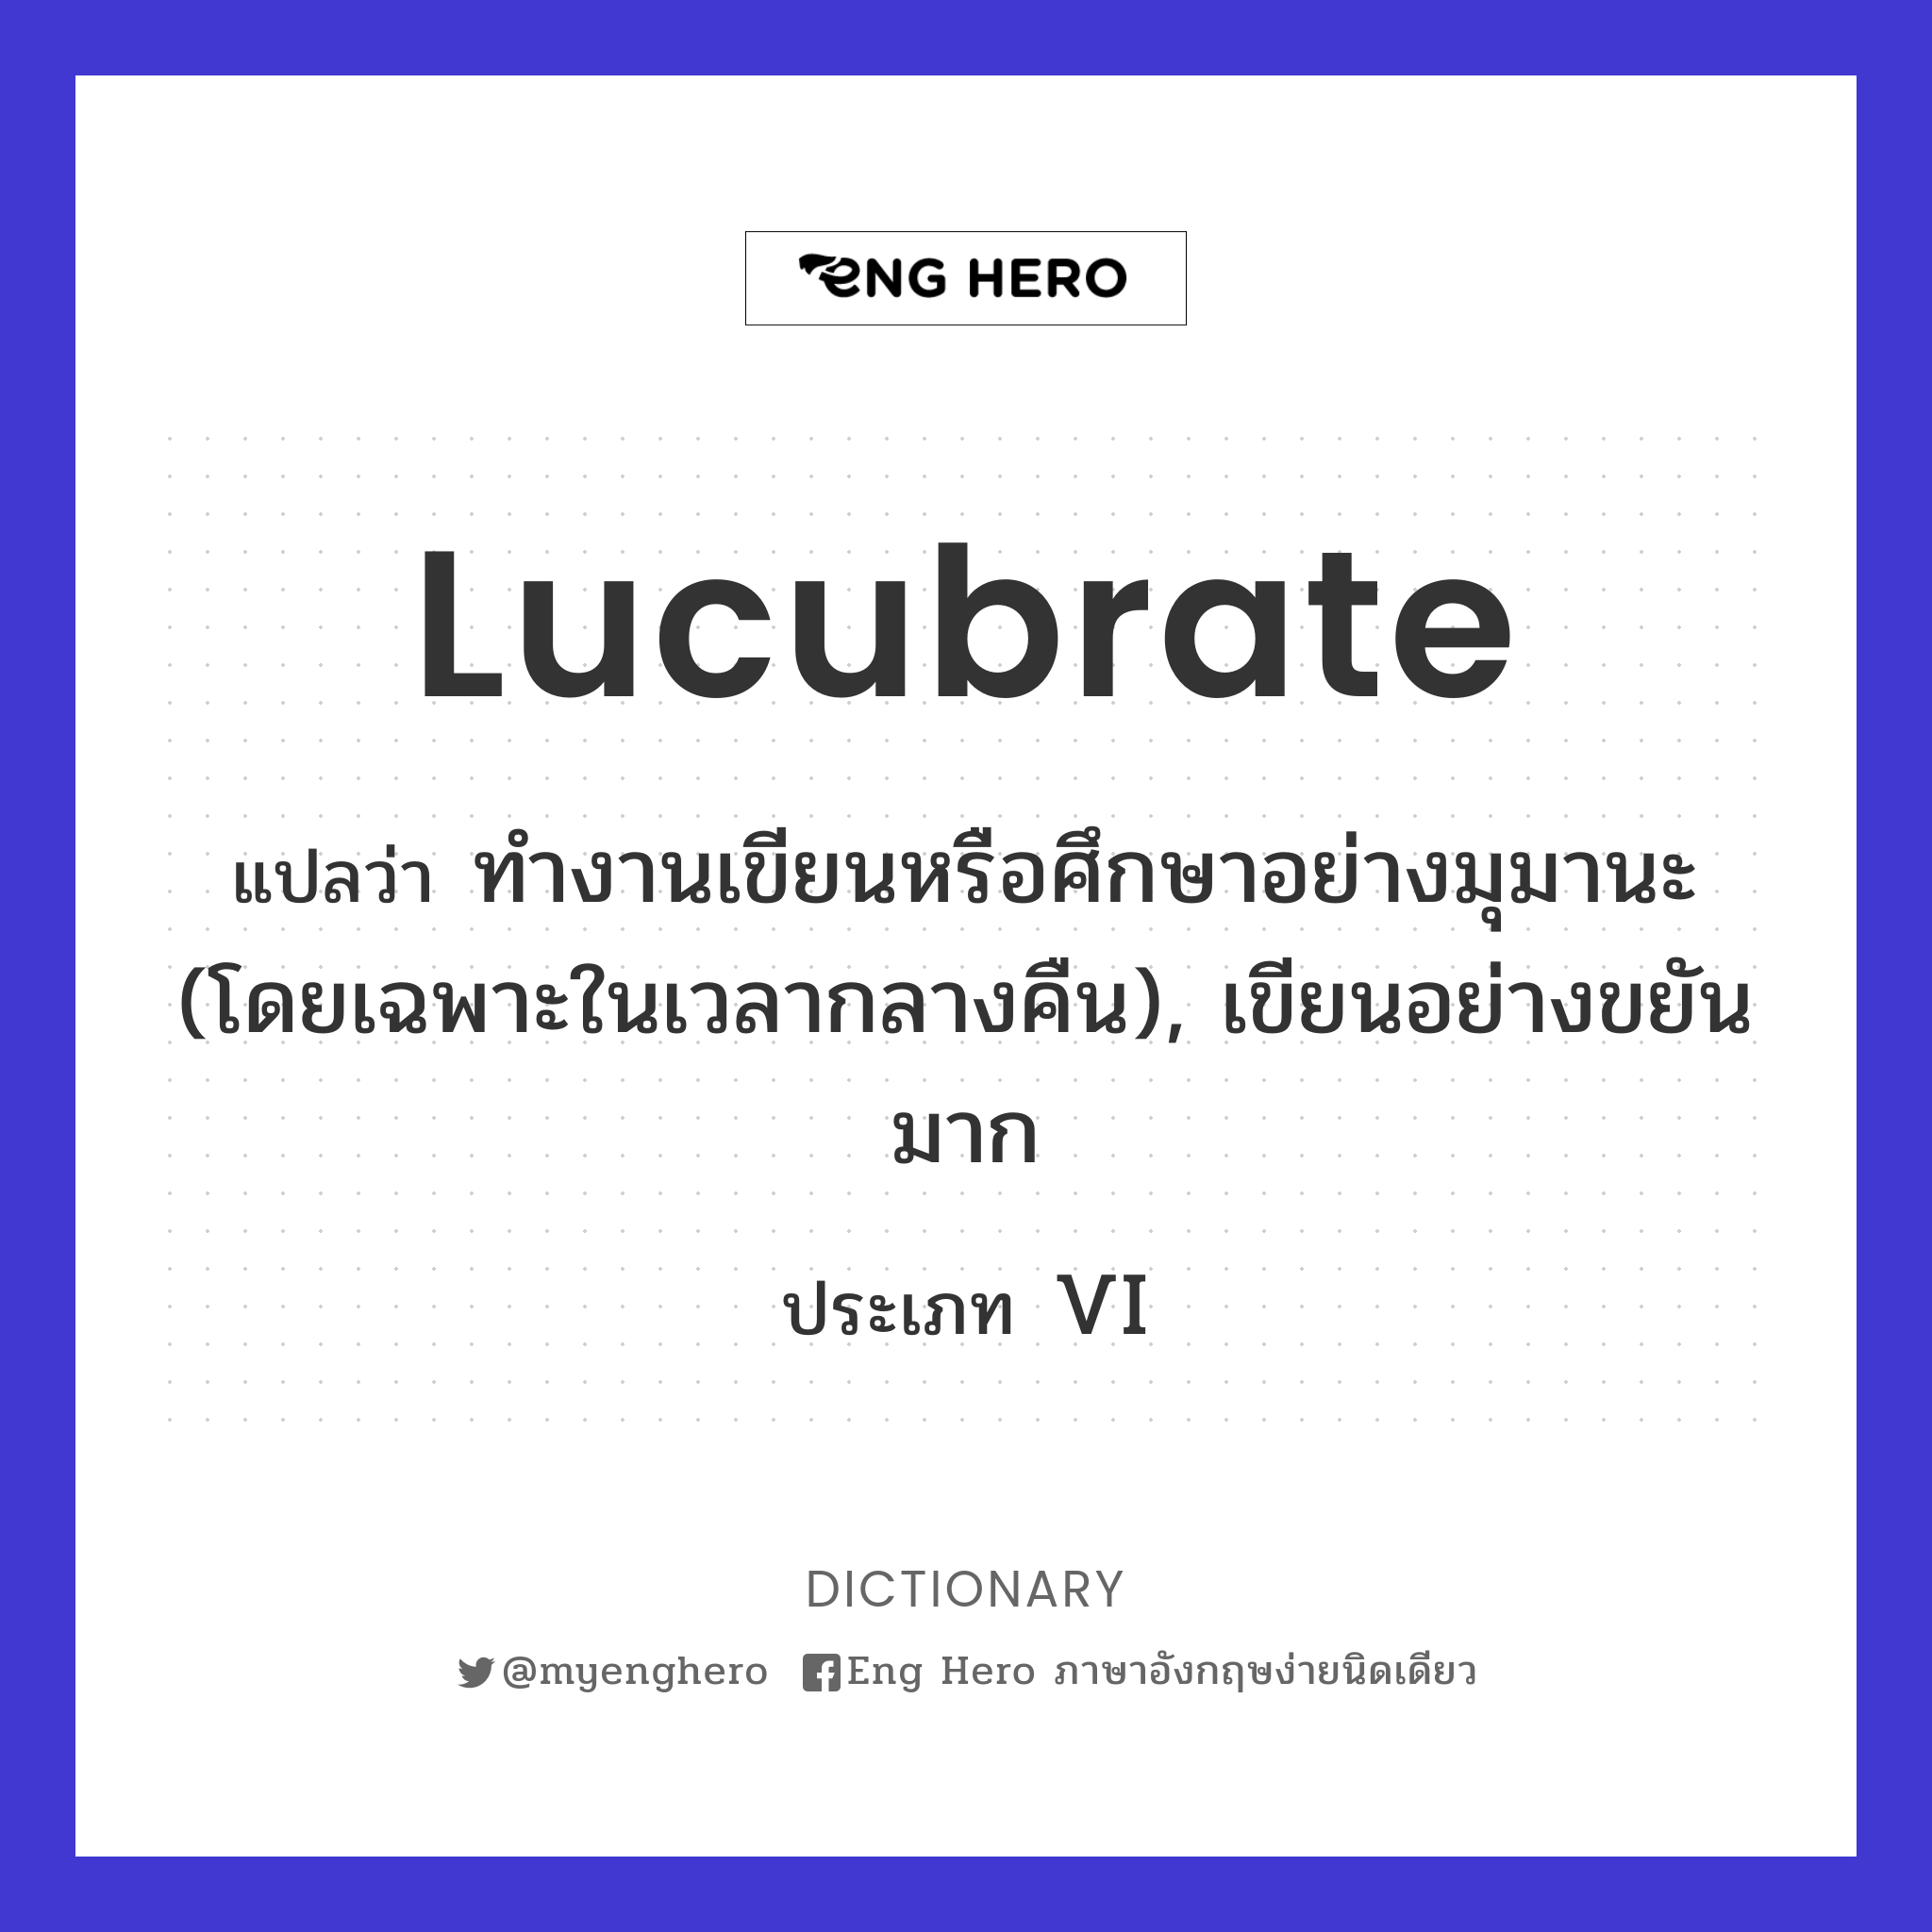 lucubrate